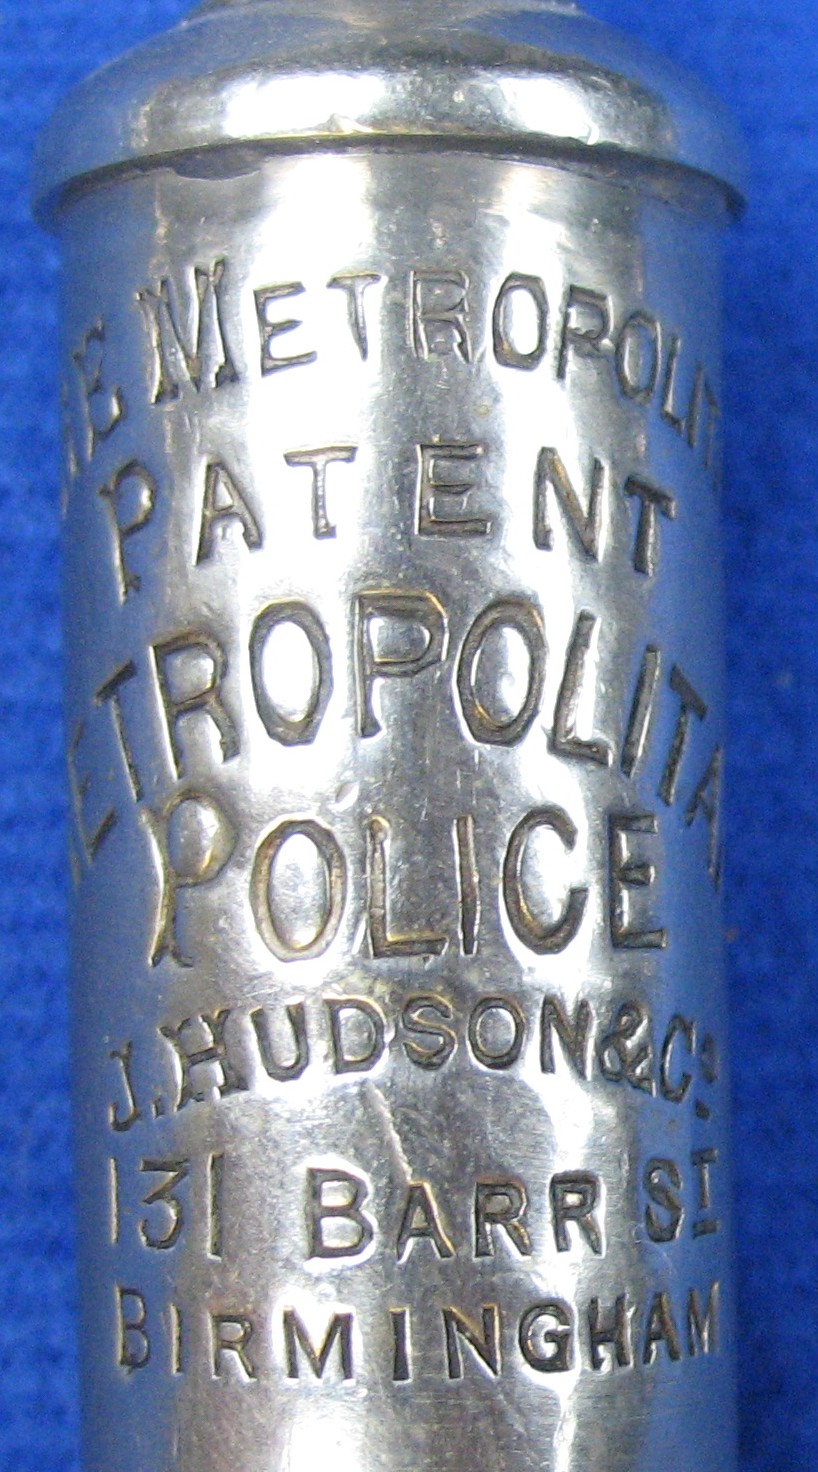 Metropolitan police whistles